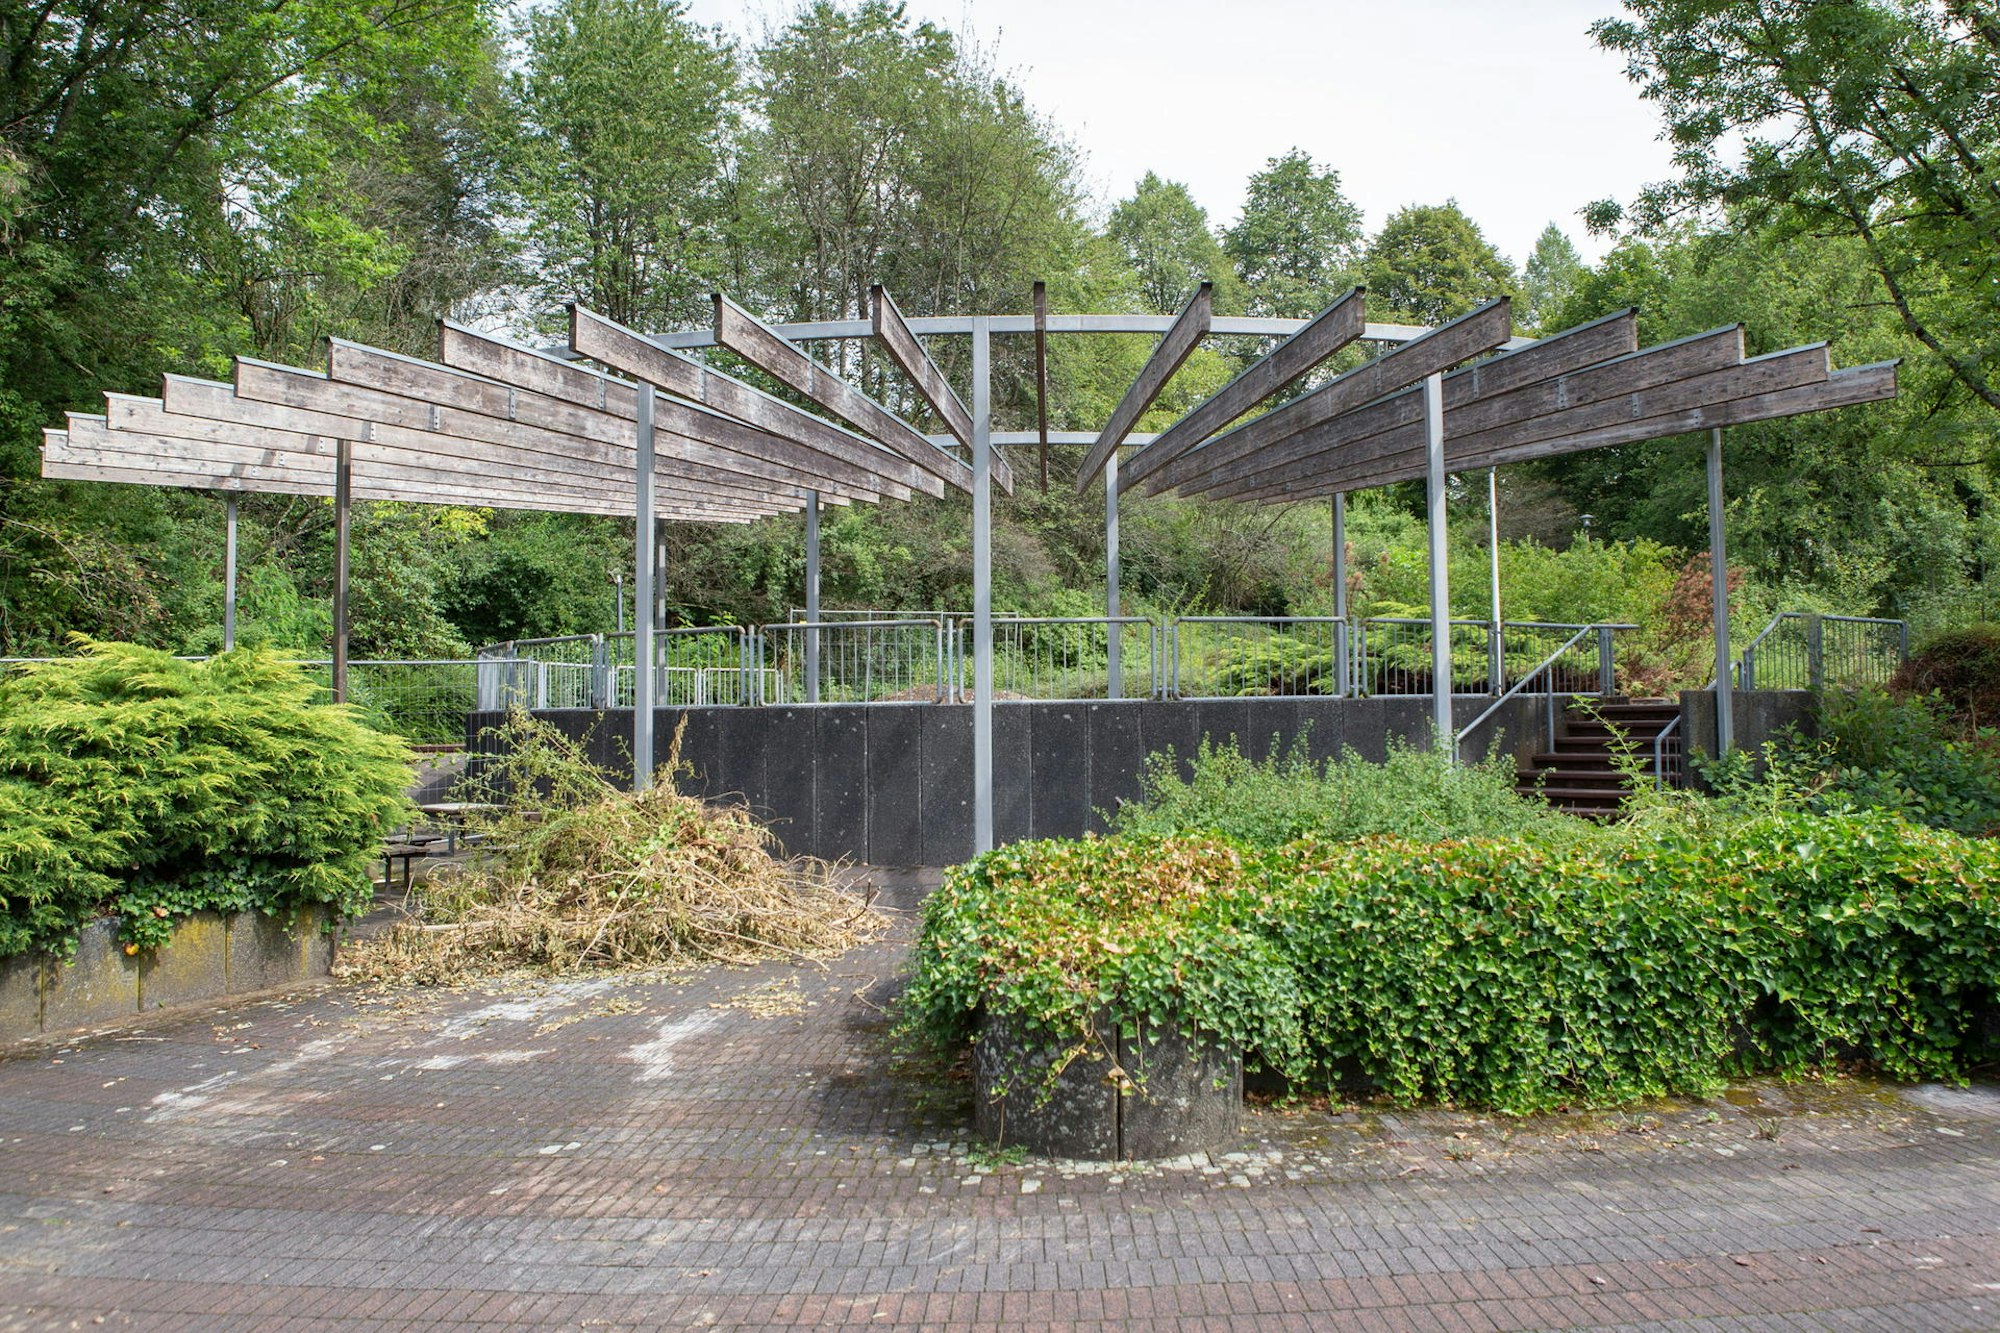 20190807-Kurpark-Eckenhagen-gie-009